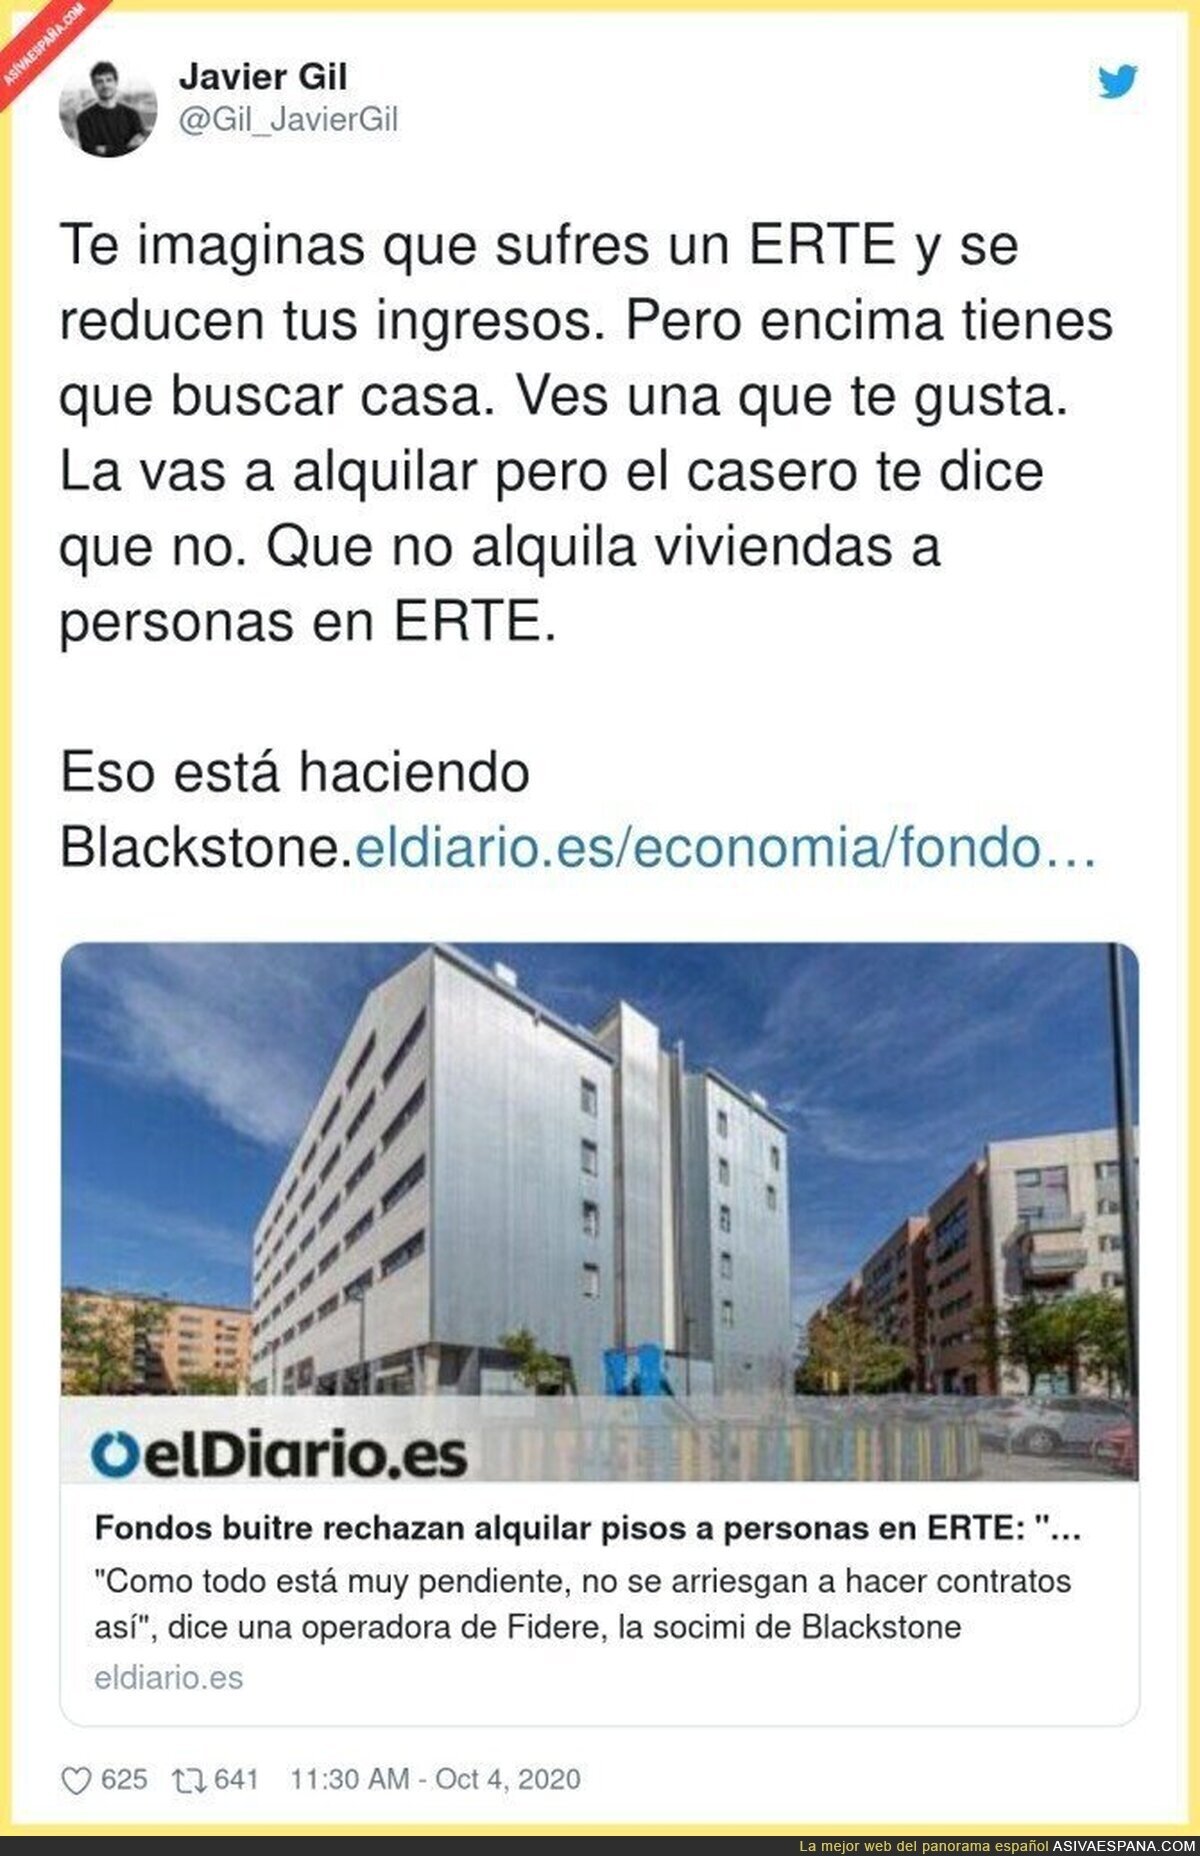 Esto está haciendo Blackstone con la gente que está en ERTE y busca vivienda para alquilar